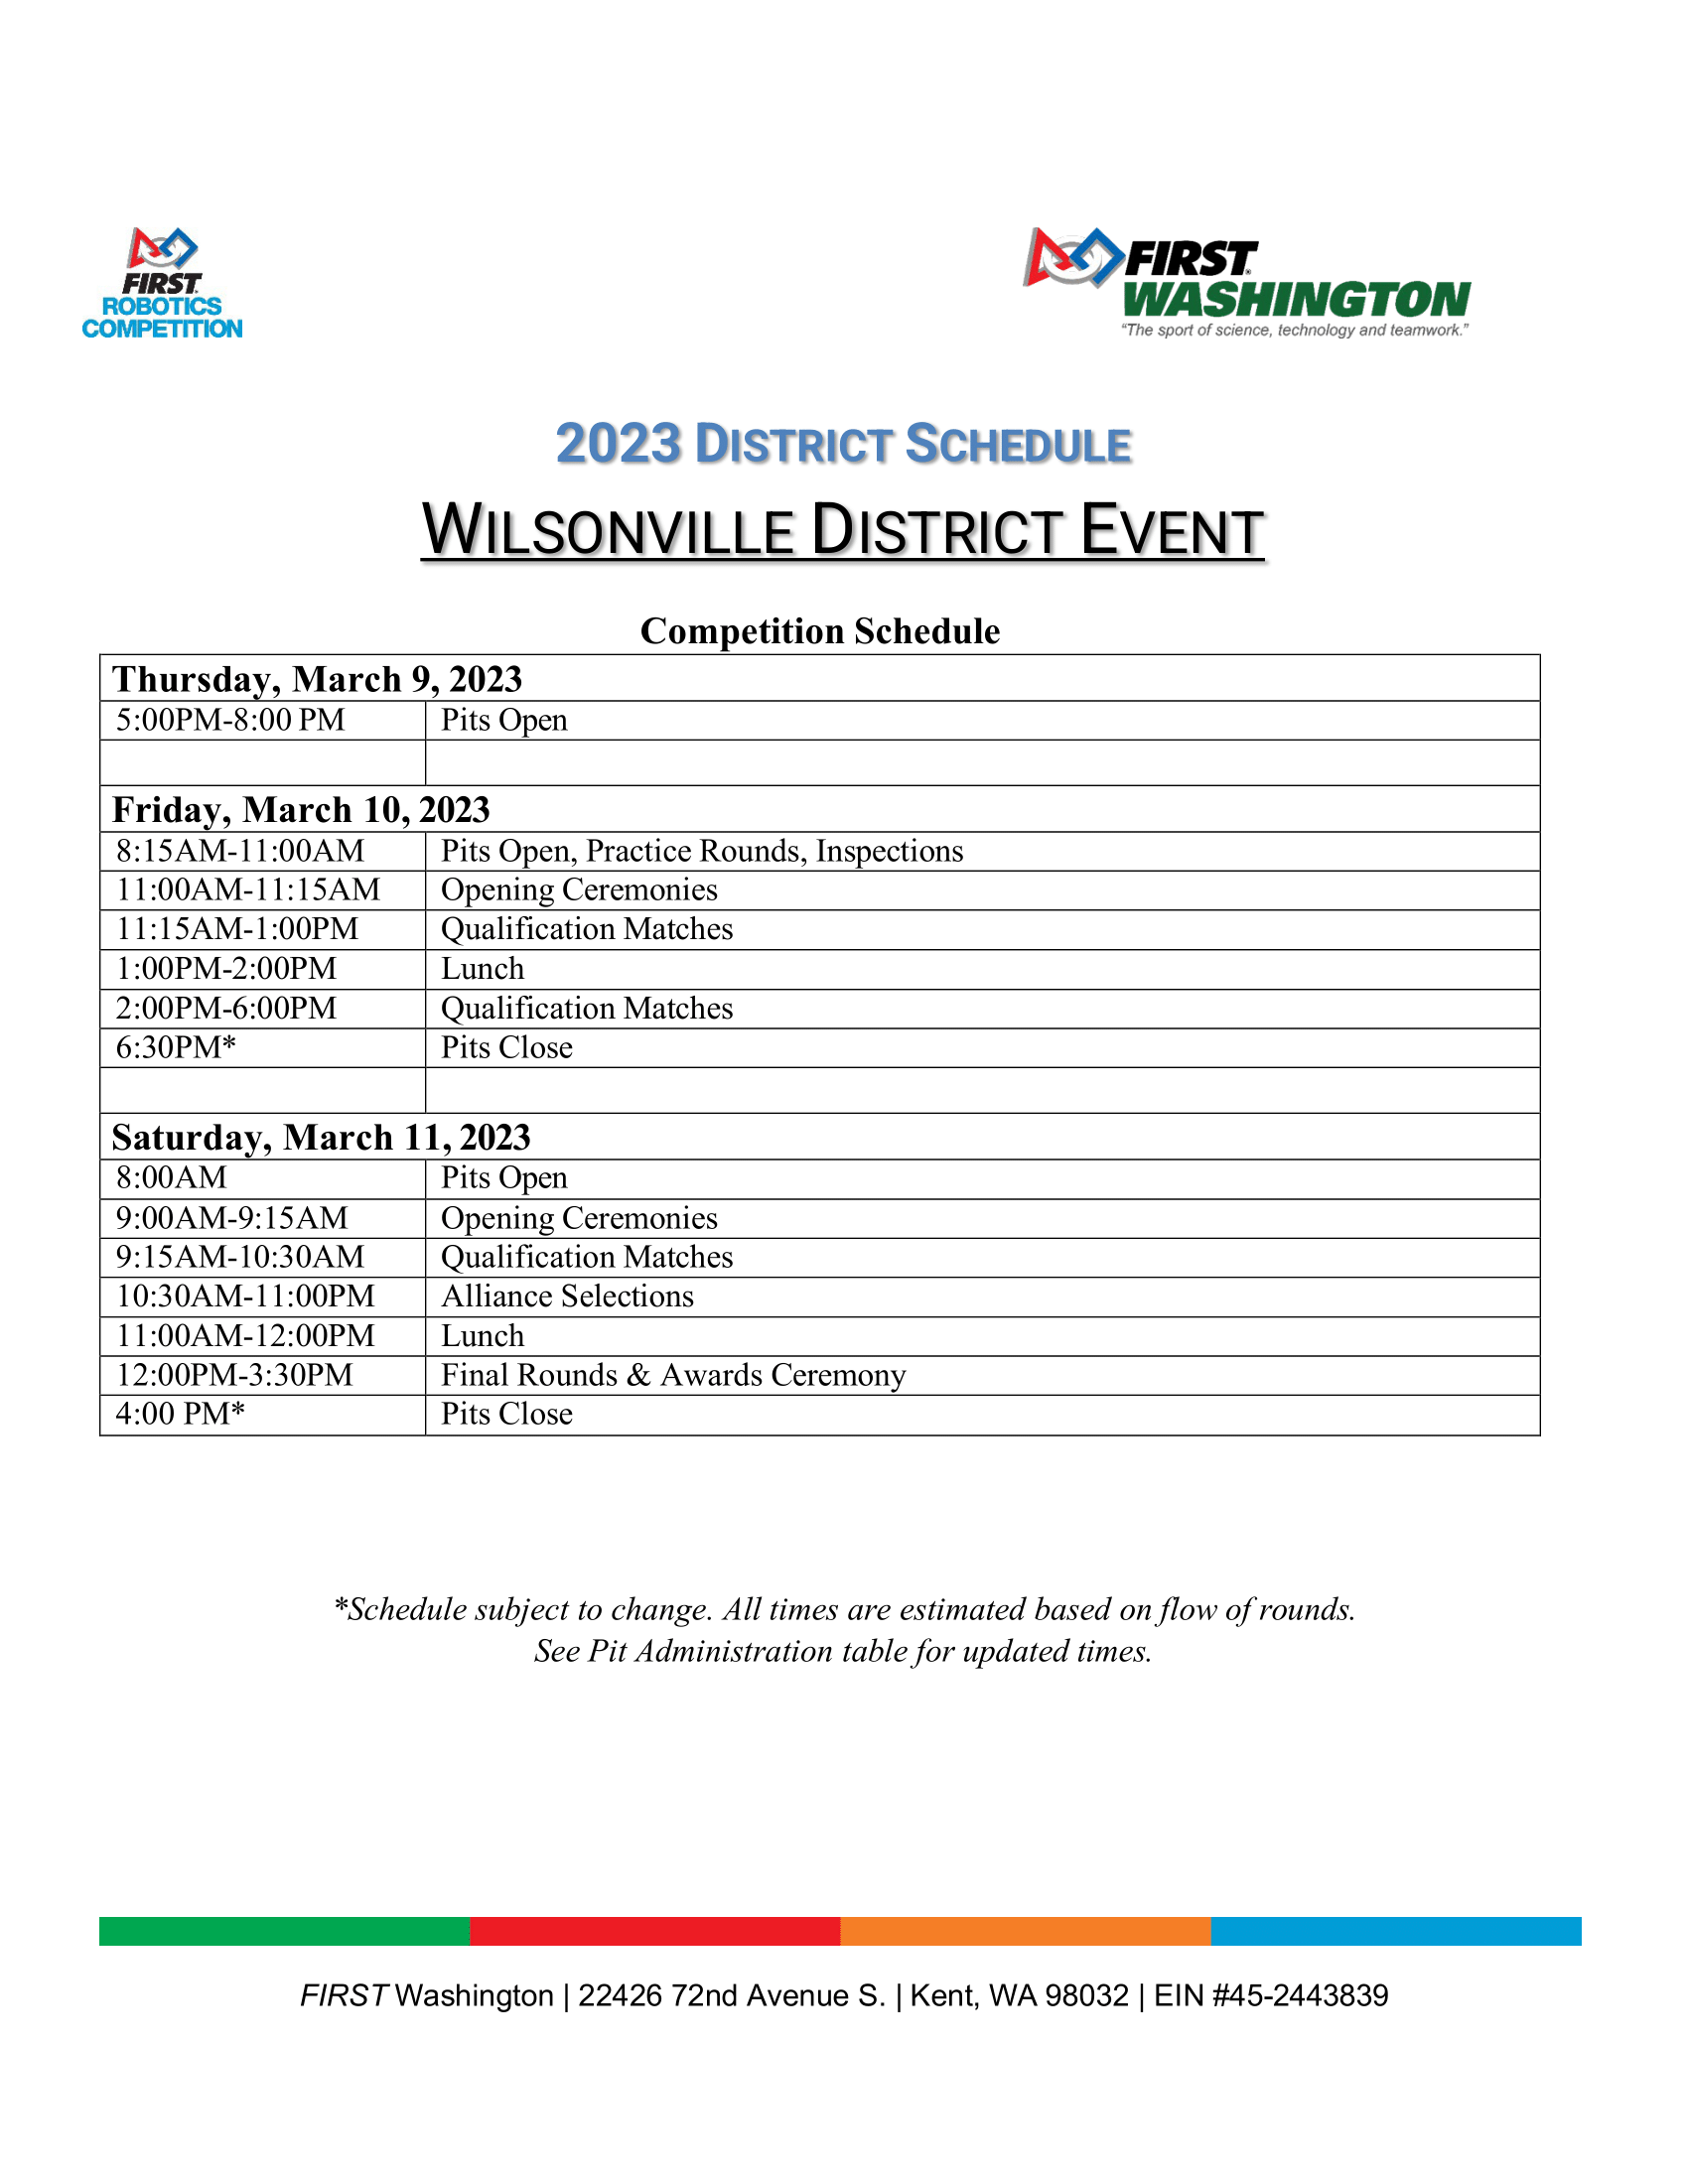 Wilsonville Schedule